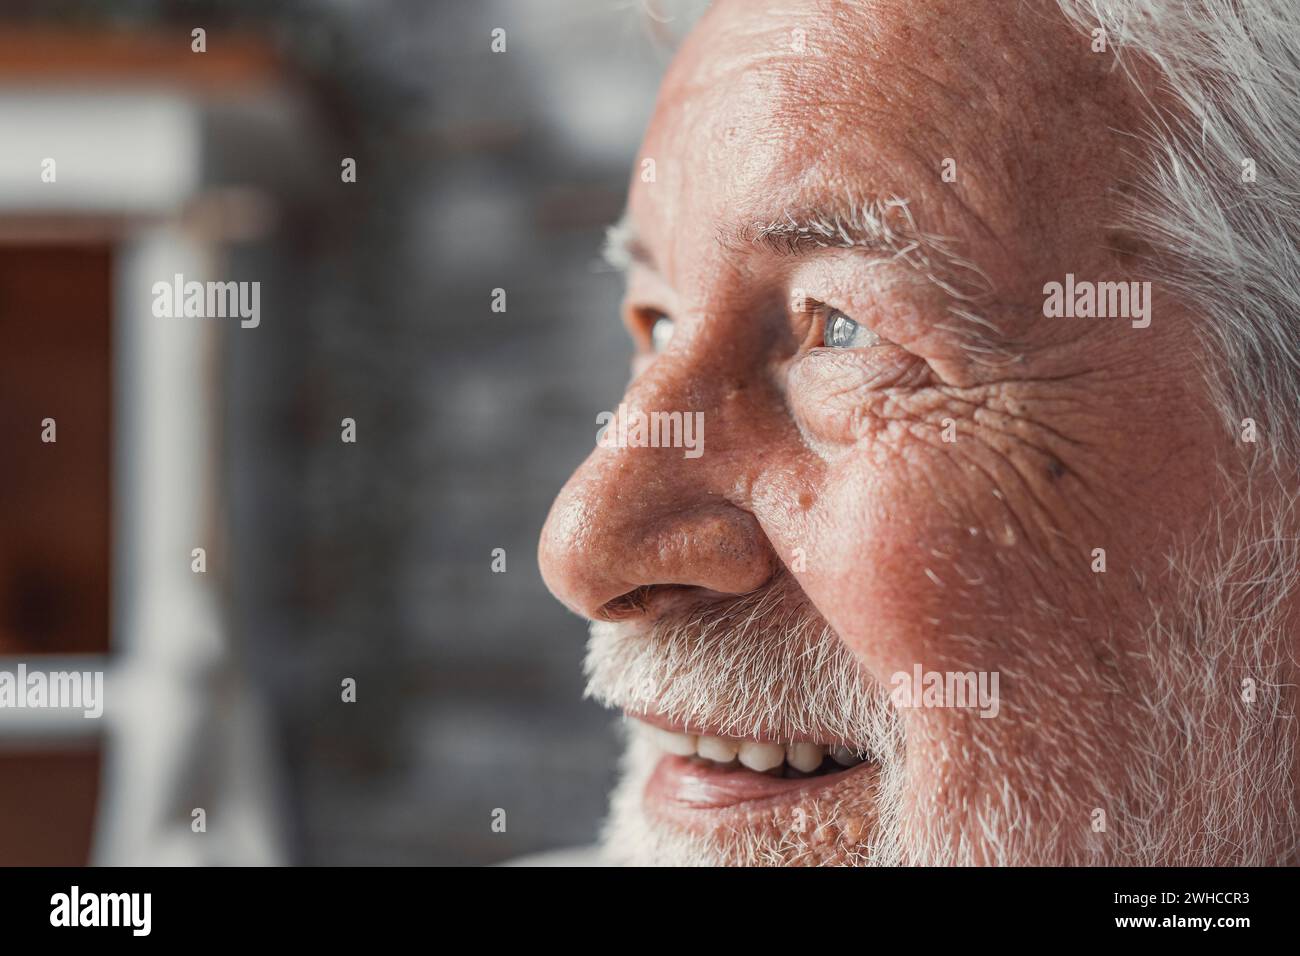 Ein hübscher älterer Mann, der die Kamera anstarrt, fühlt sich glücklich an, wenn man das Gesicht aus der Nähe betrachtet. Senior Werbung professionelle Zahnklinik, Zahnreparatur und Check-up Dienstleistungen, Krankenversicherung Abdeckung für ältere Konzept Stockfoto